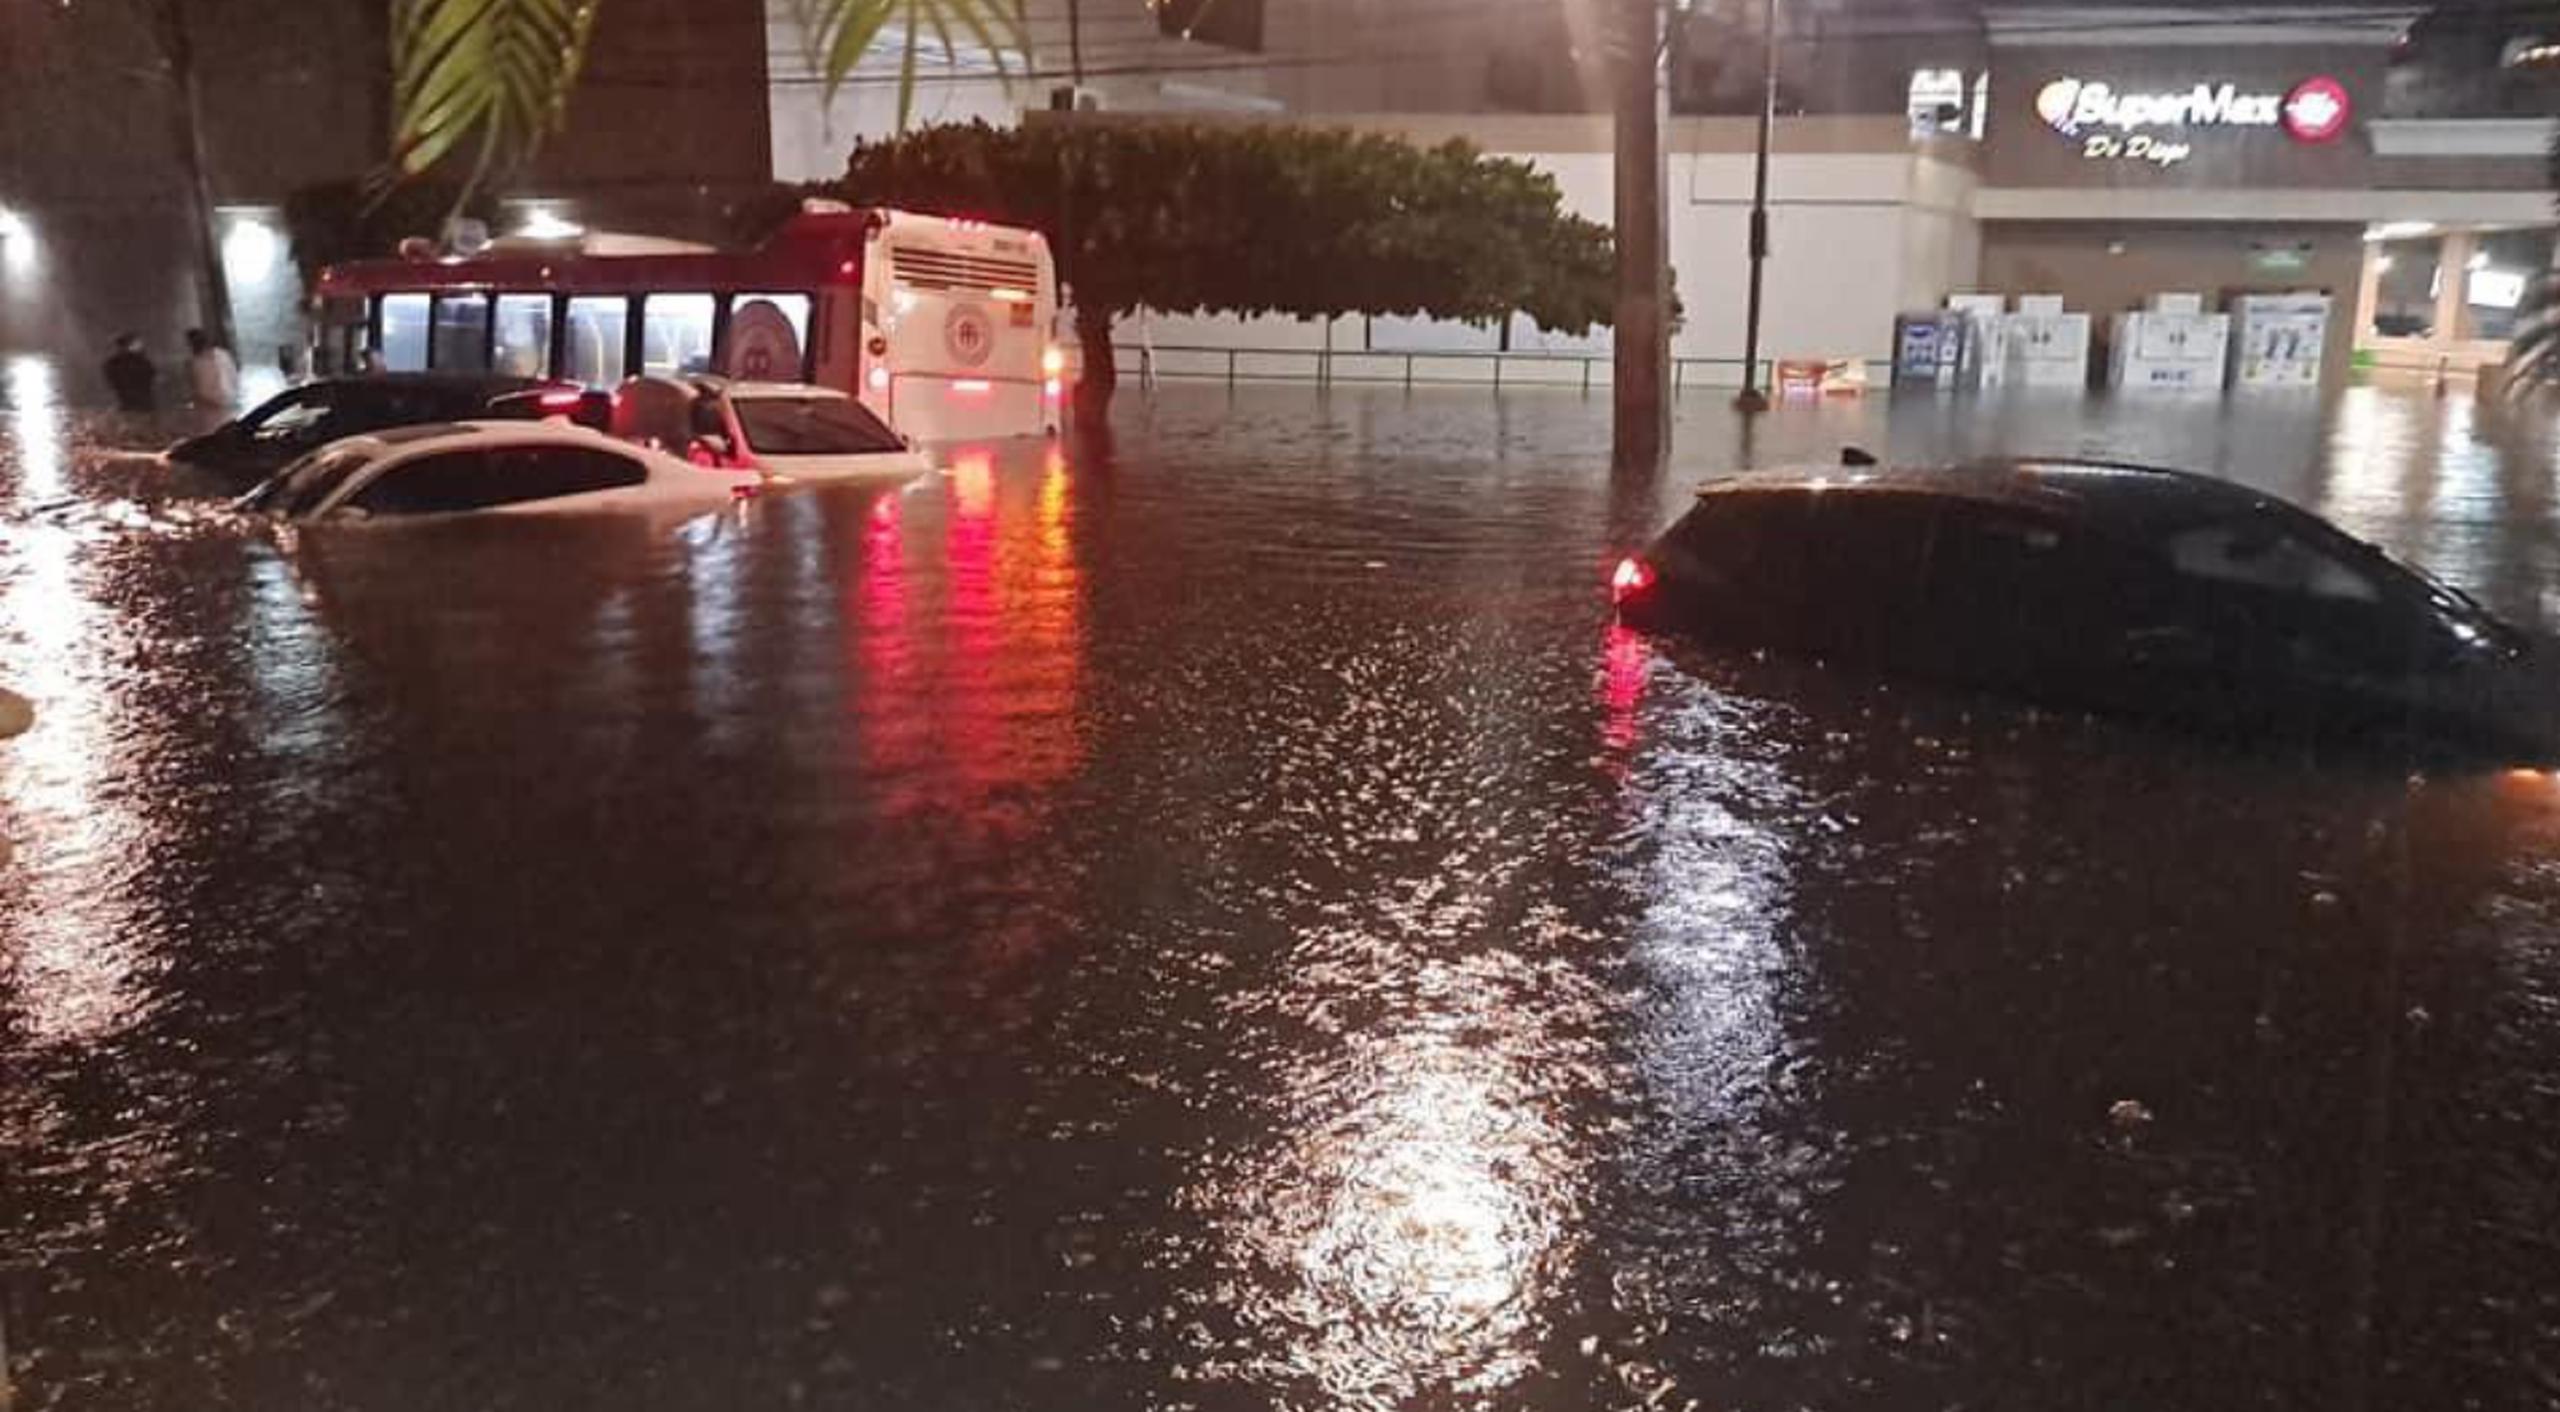 Imagen de la inundación registrada en la noche del viernes, 27 de octubre, por las fuertes lluvias en la zona entre el Condado y la calle Loíza.